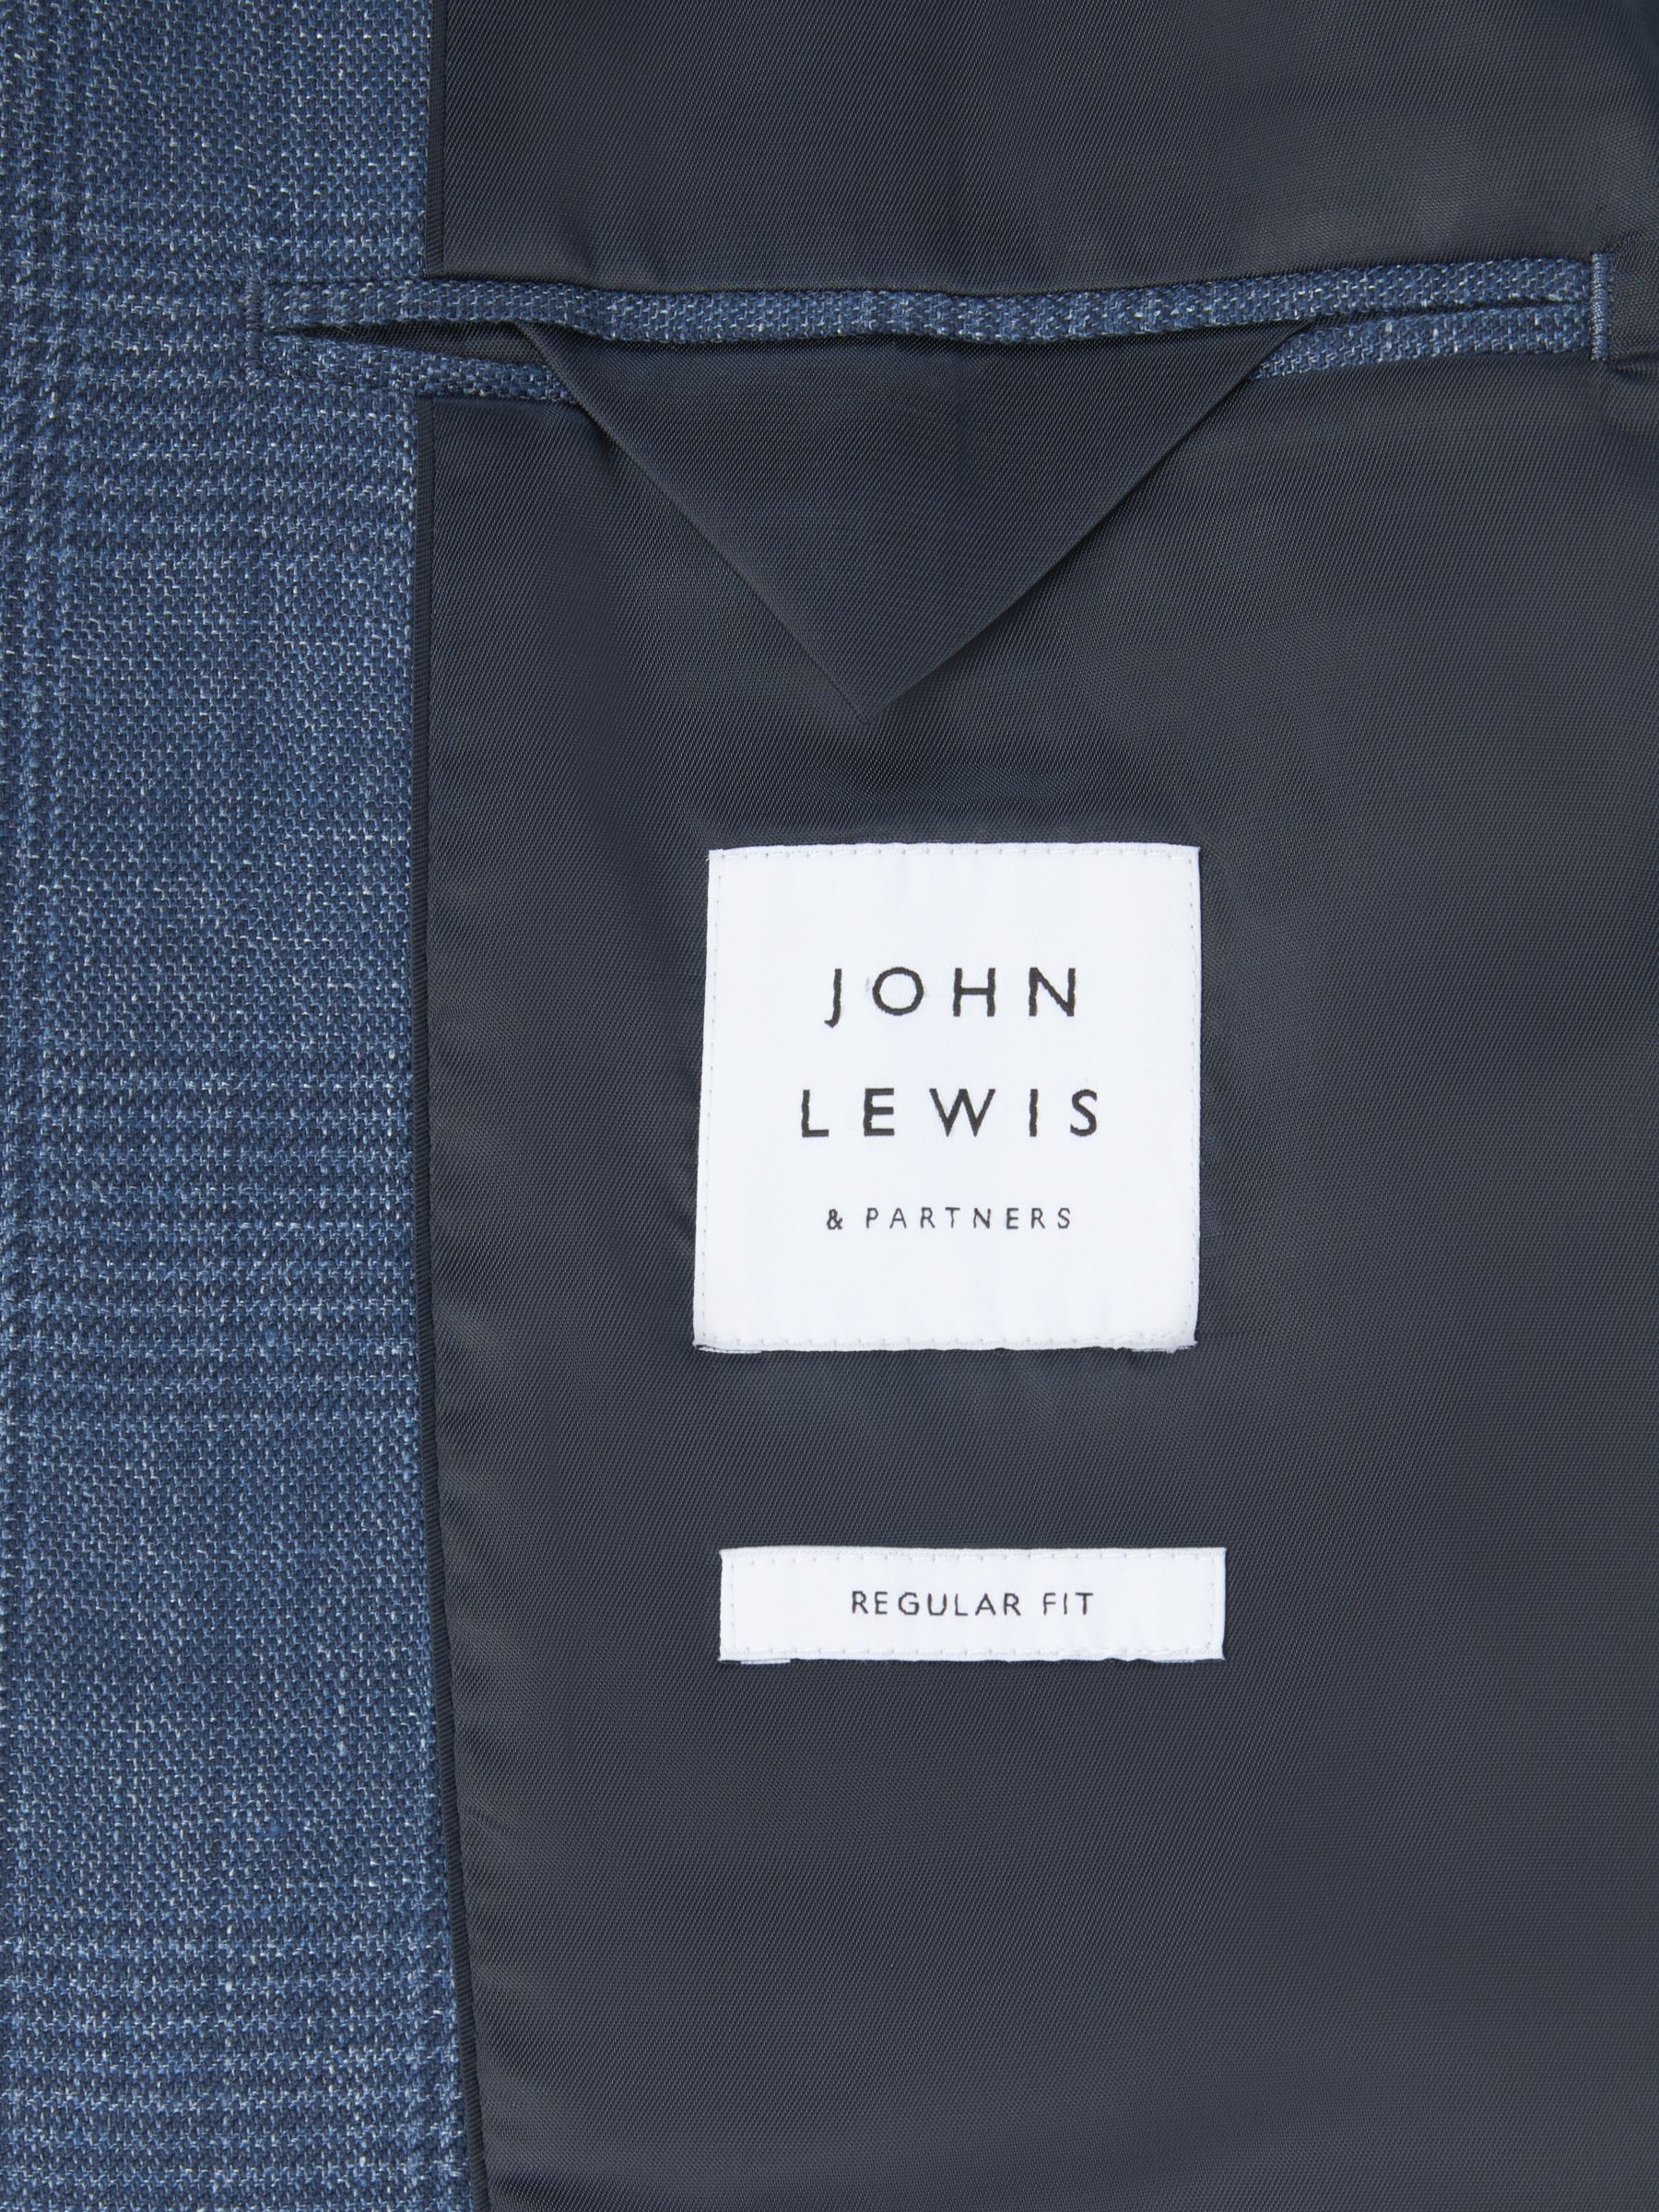 Buy John Lewis Arundel Cotton Blend Check Regular Fit Blazer, Mid Blue Online at johnlewis.com